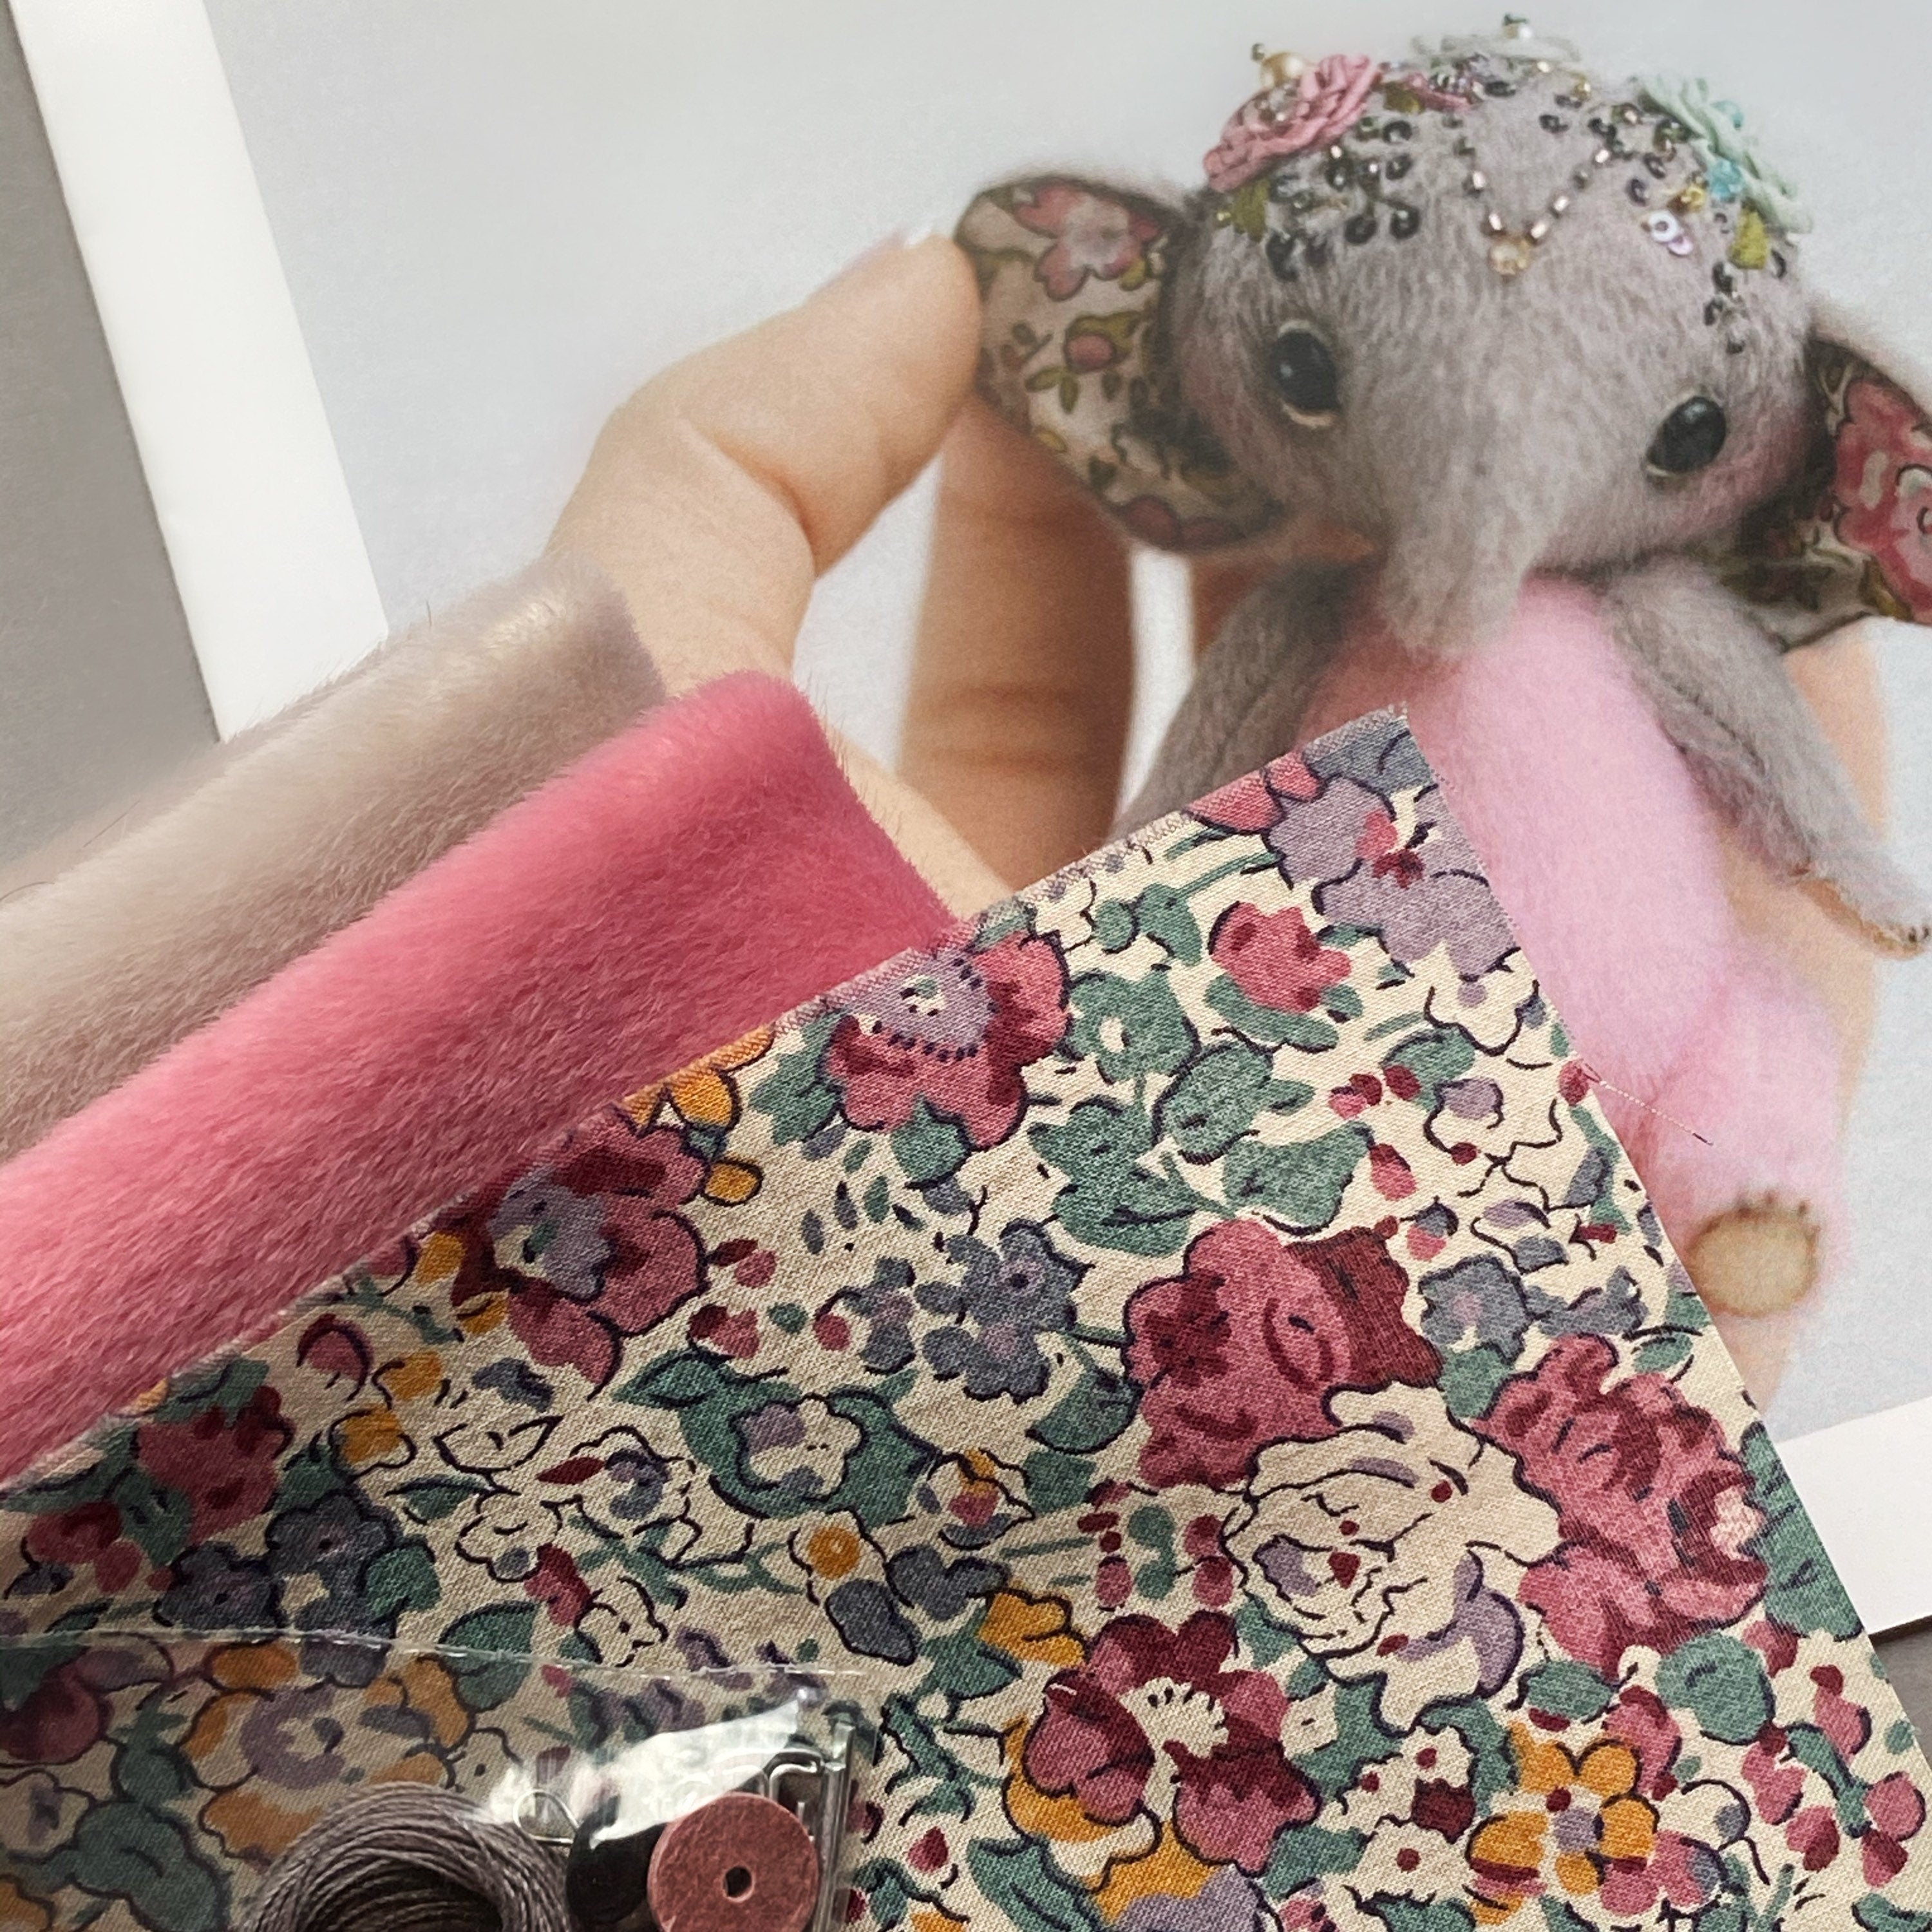 Elephant Aisha - Sewing KIT, stuffed toy craft kit, diy elephant teddy, cute toy tutorials, soft toy diy, stuffed animal pattern